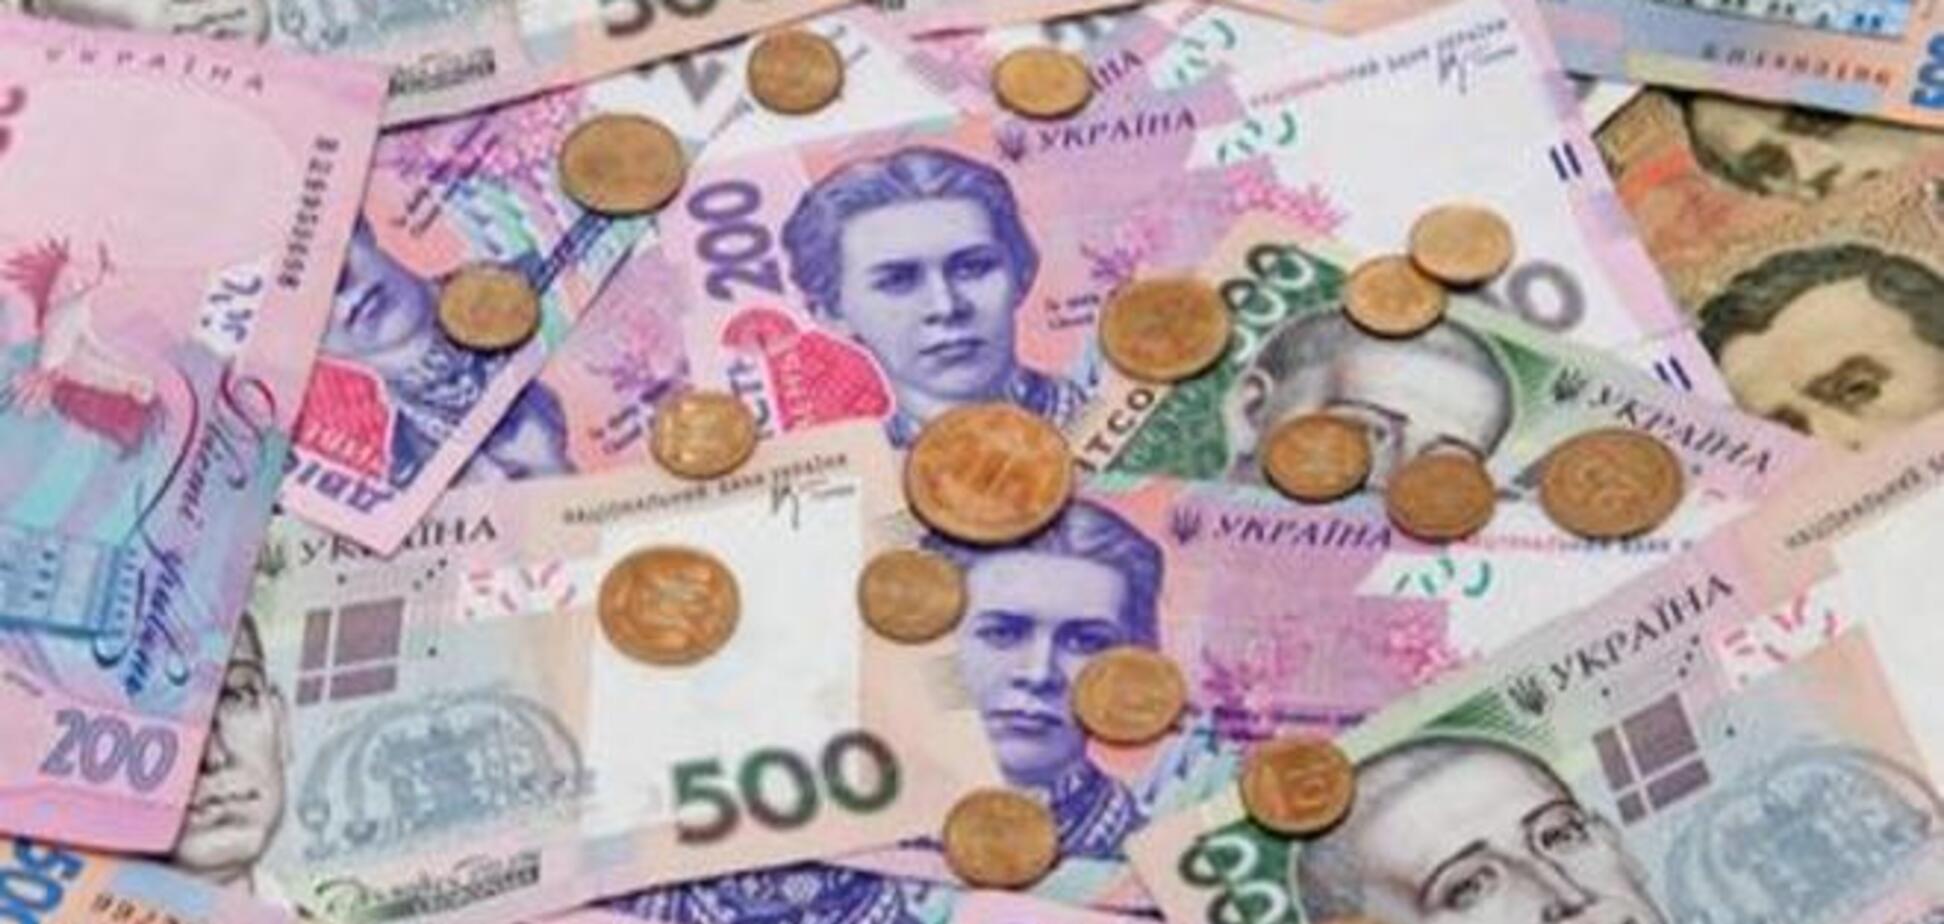 Кризис доверия: украинцы предпочитают хранить сбережения дома?